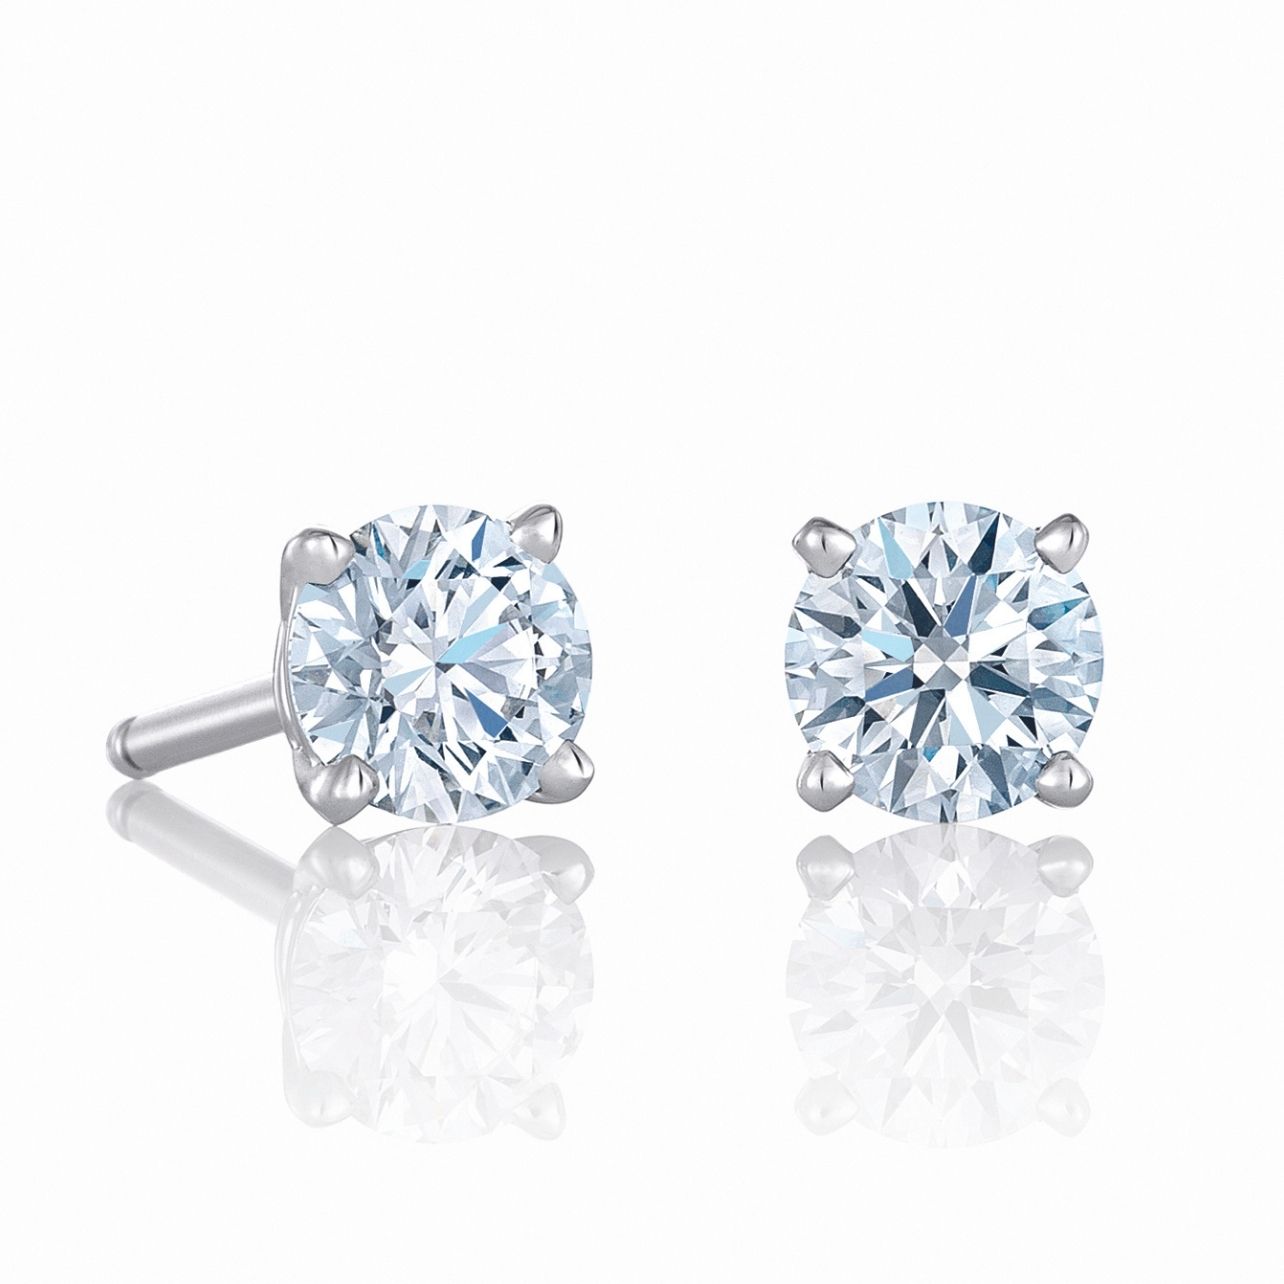 Diamond stud earrings from De Beers